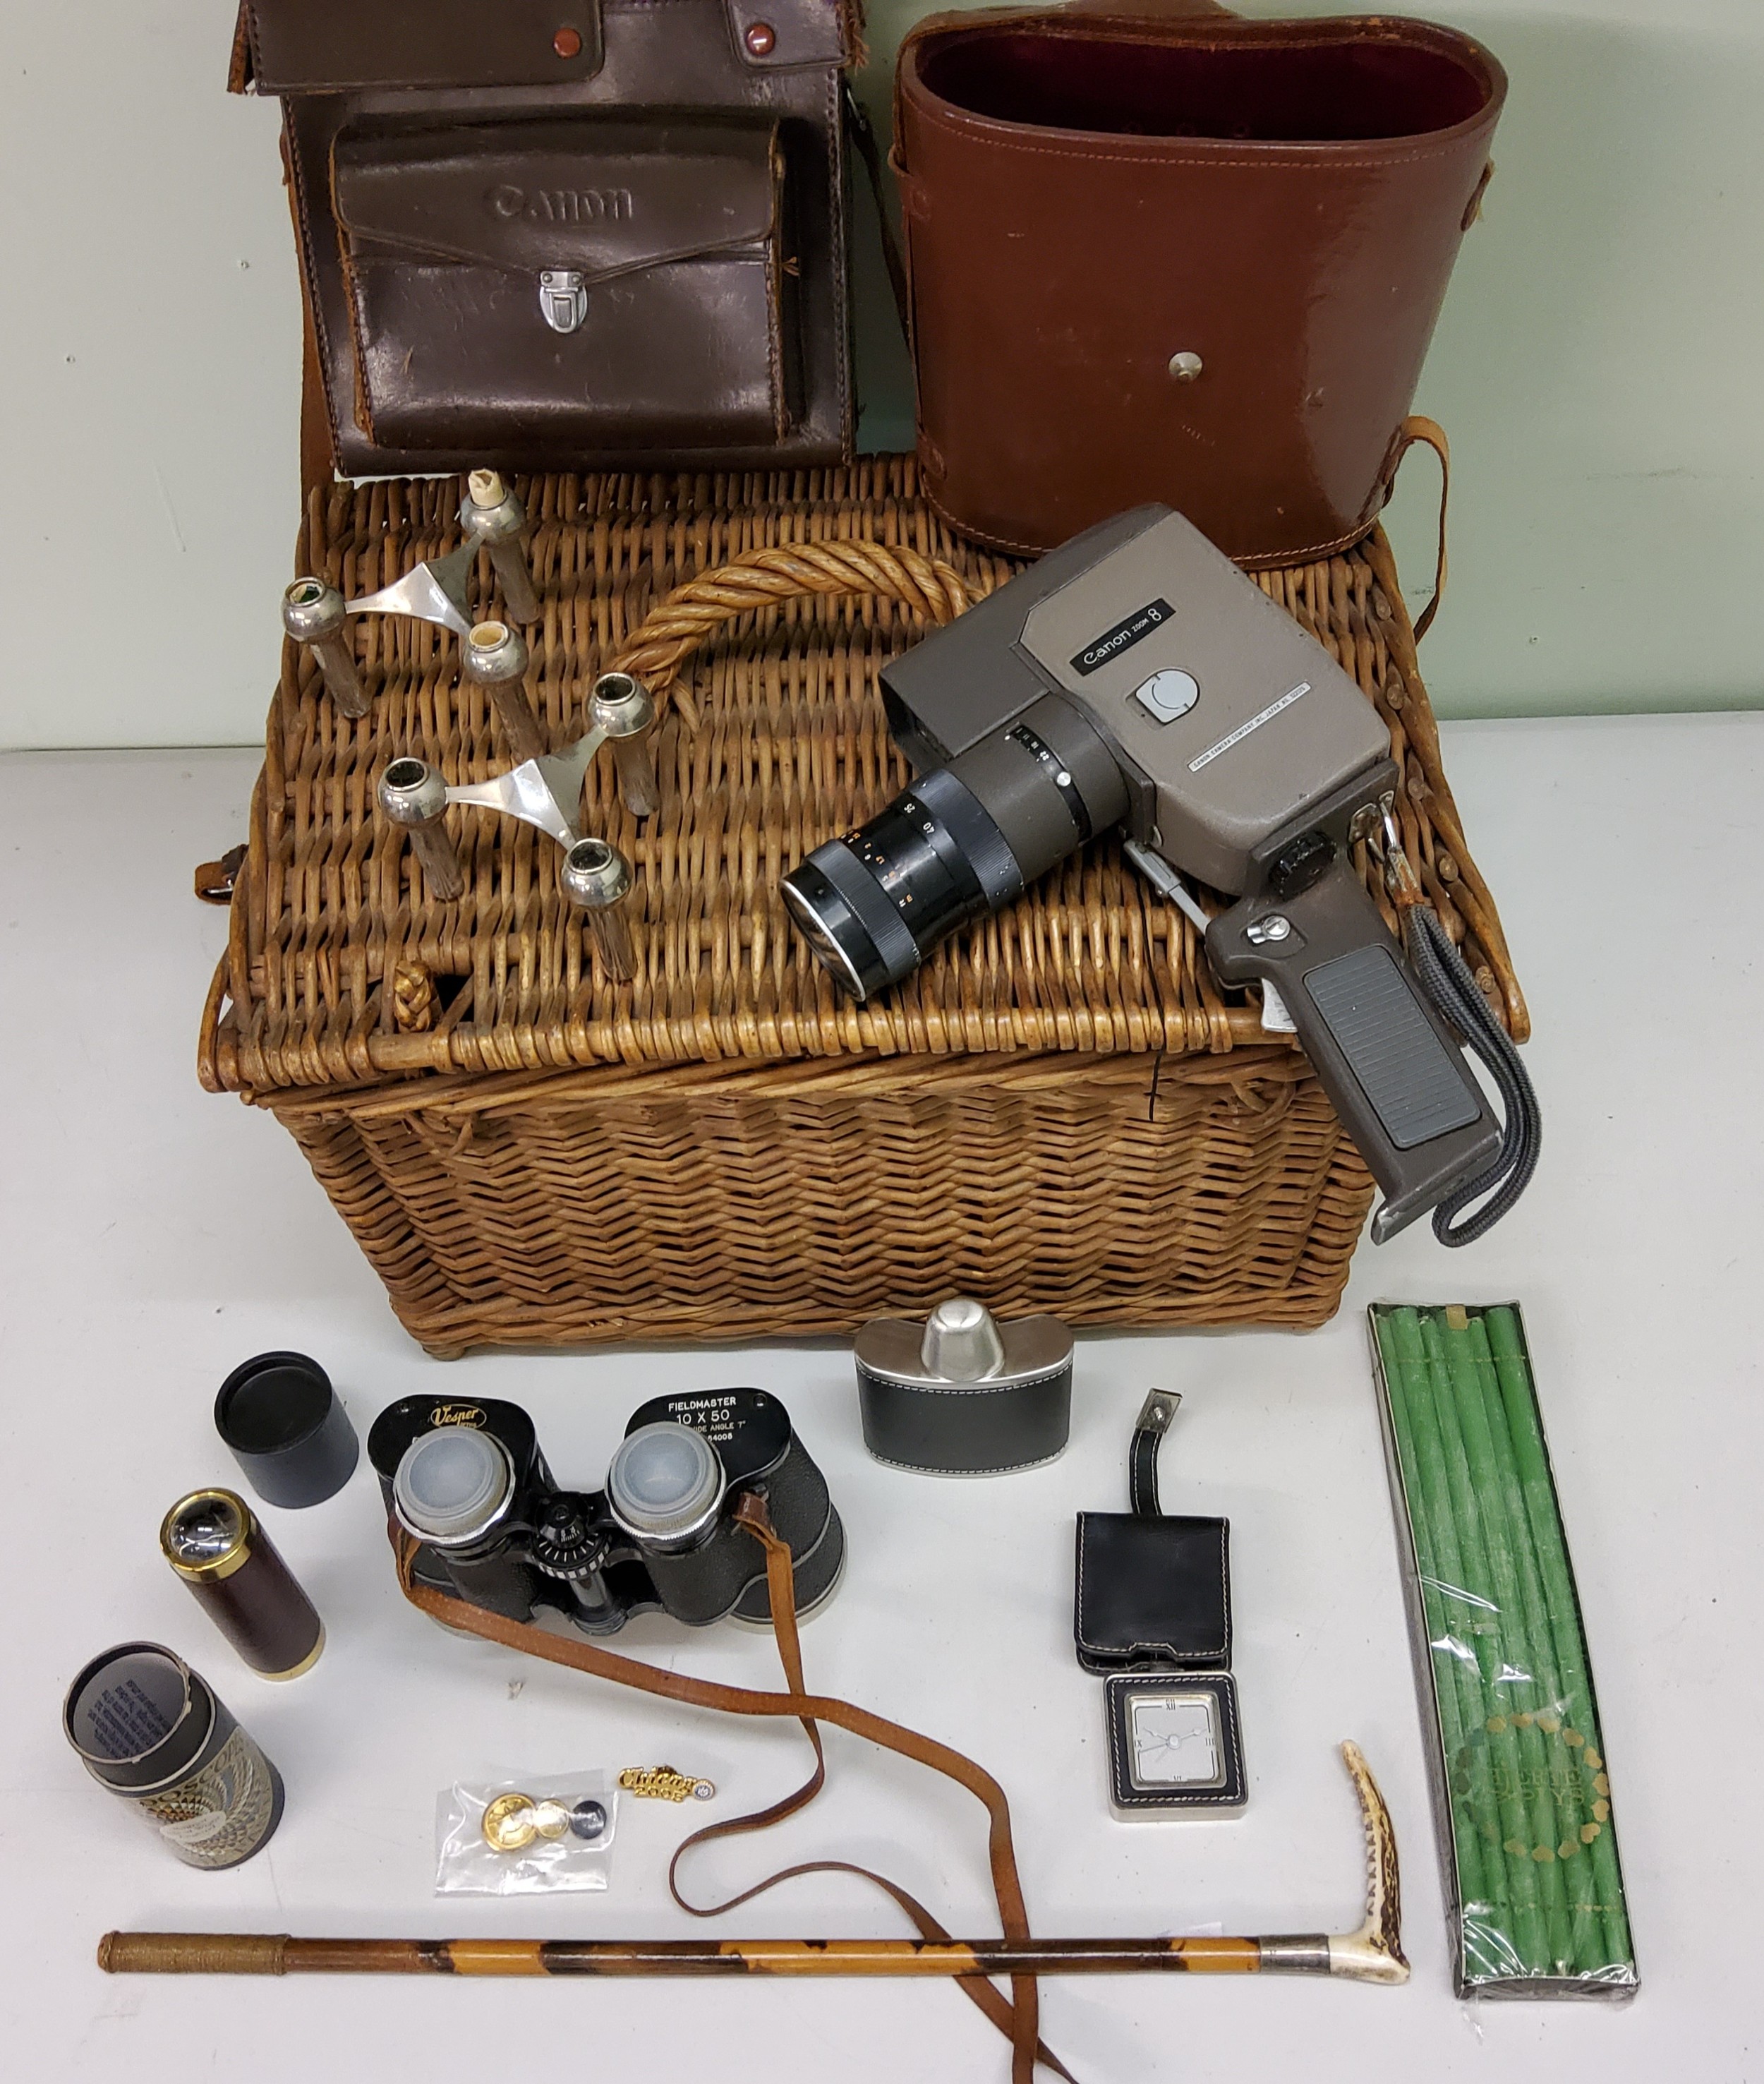 A wicker hamper;  a hunting crop, horn handle;  Vesper Fieldmaster 10 x 50 binoculars, cased;  a